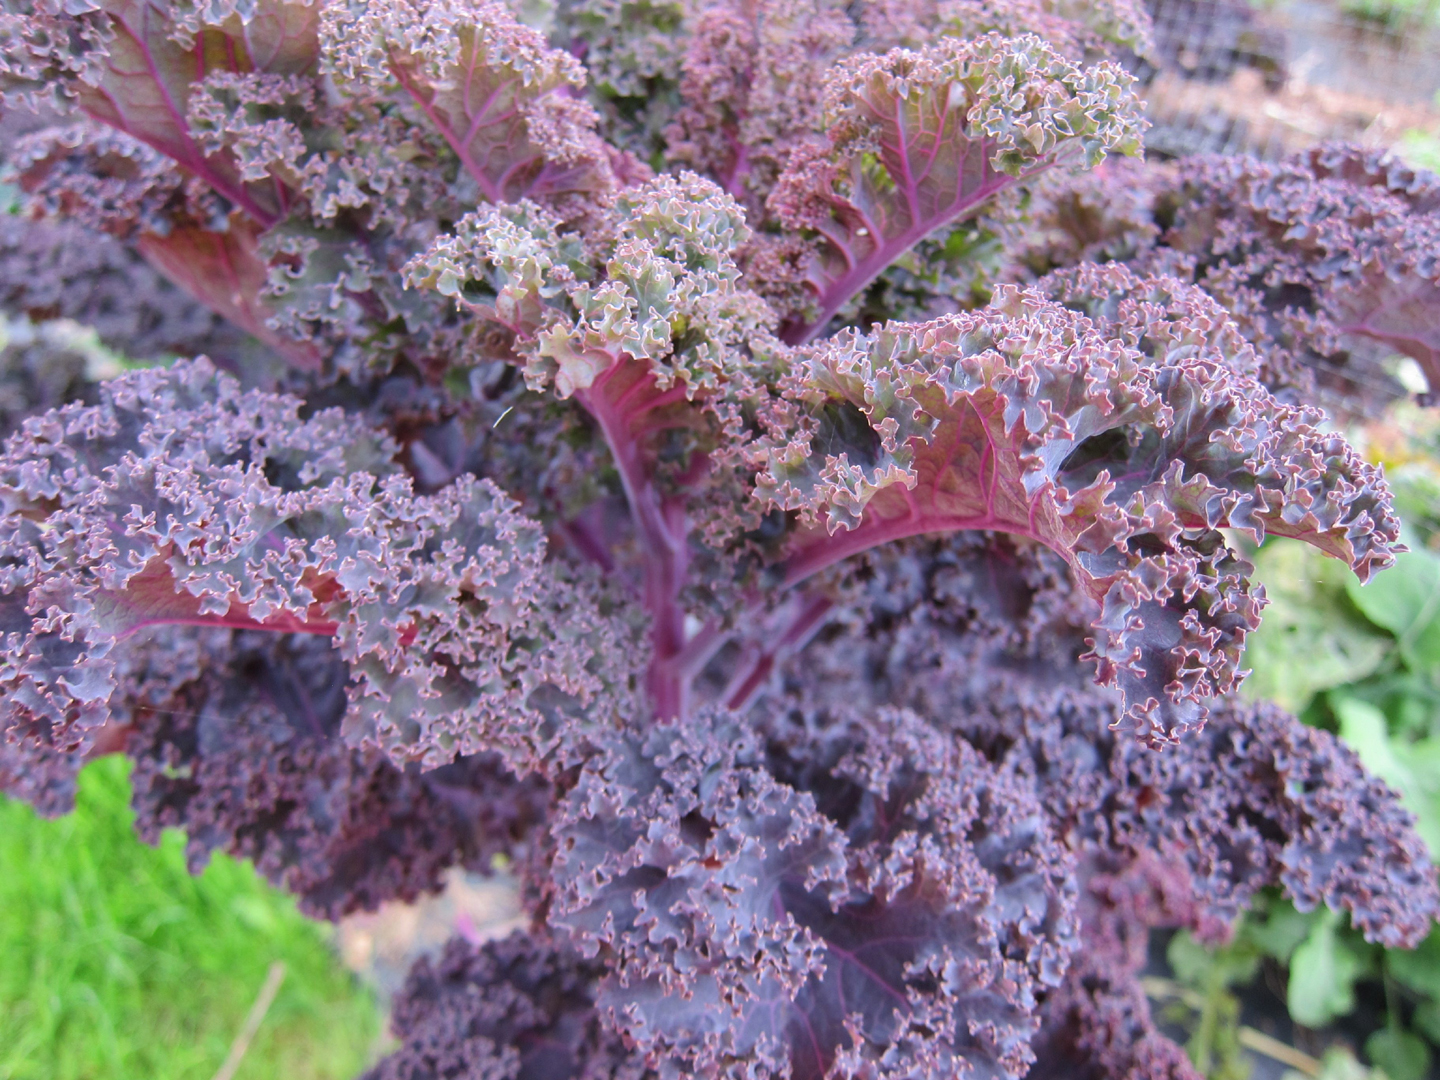 Growing Kale: purple/red curly kale in a garden